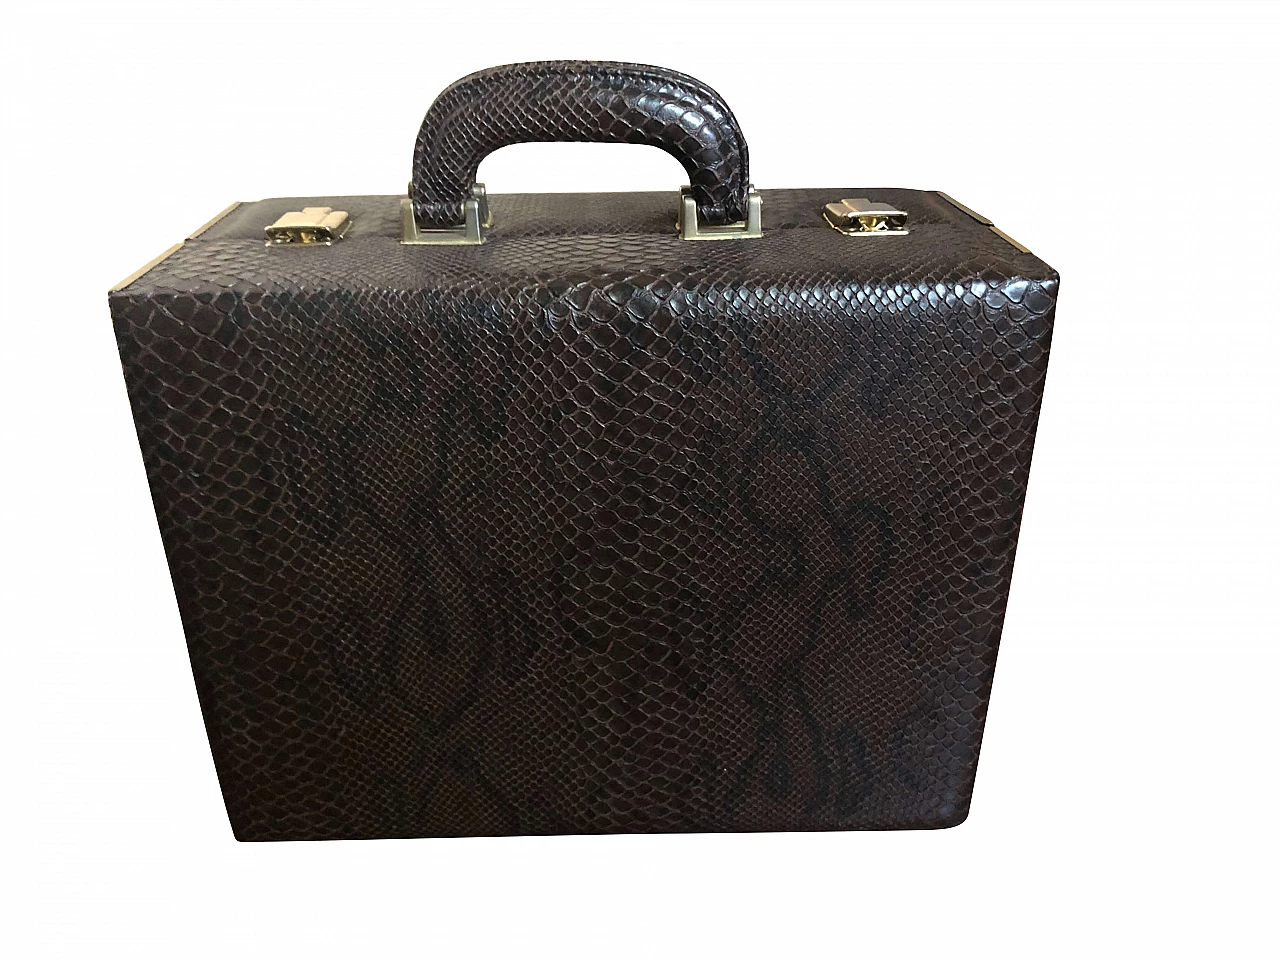 Reptile briefcase, 80's 1162938